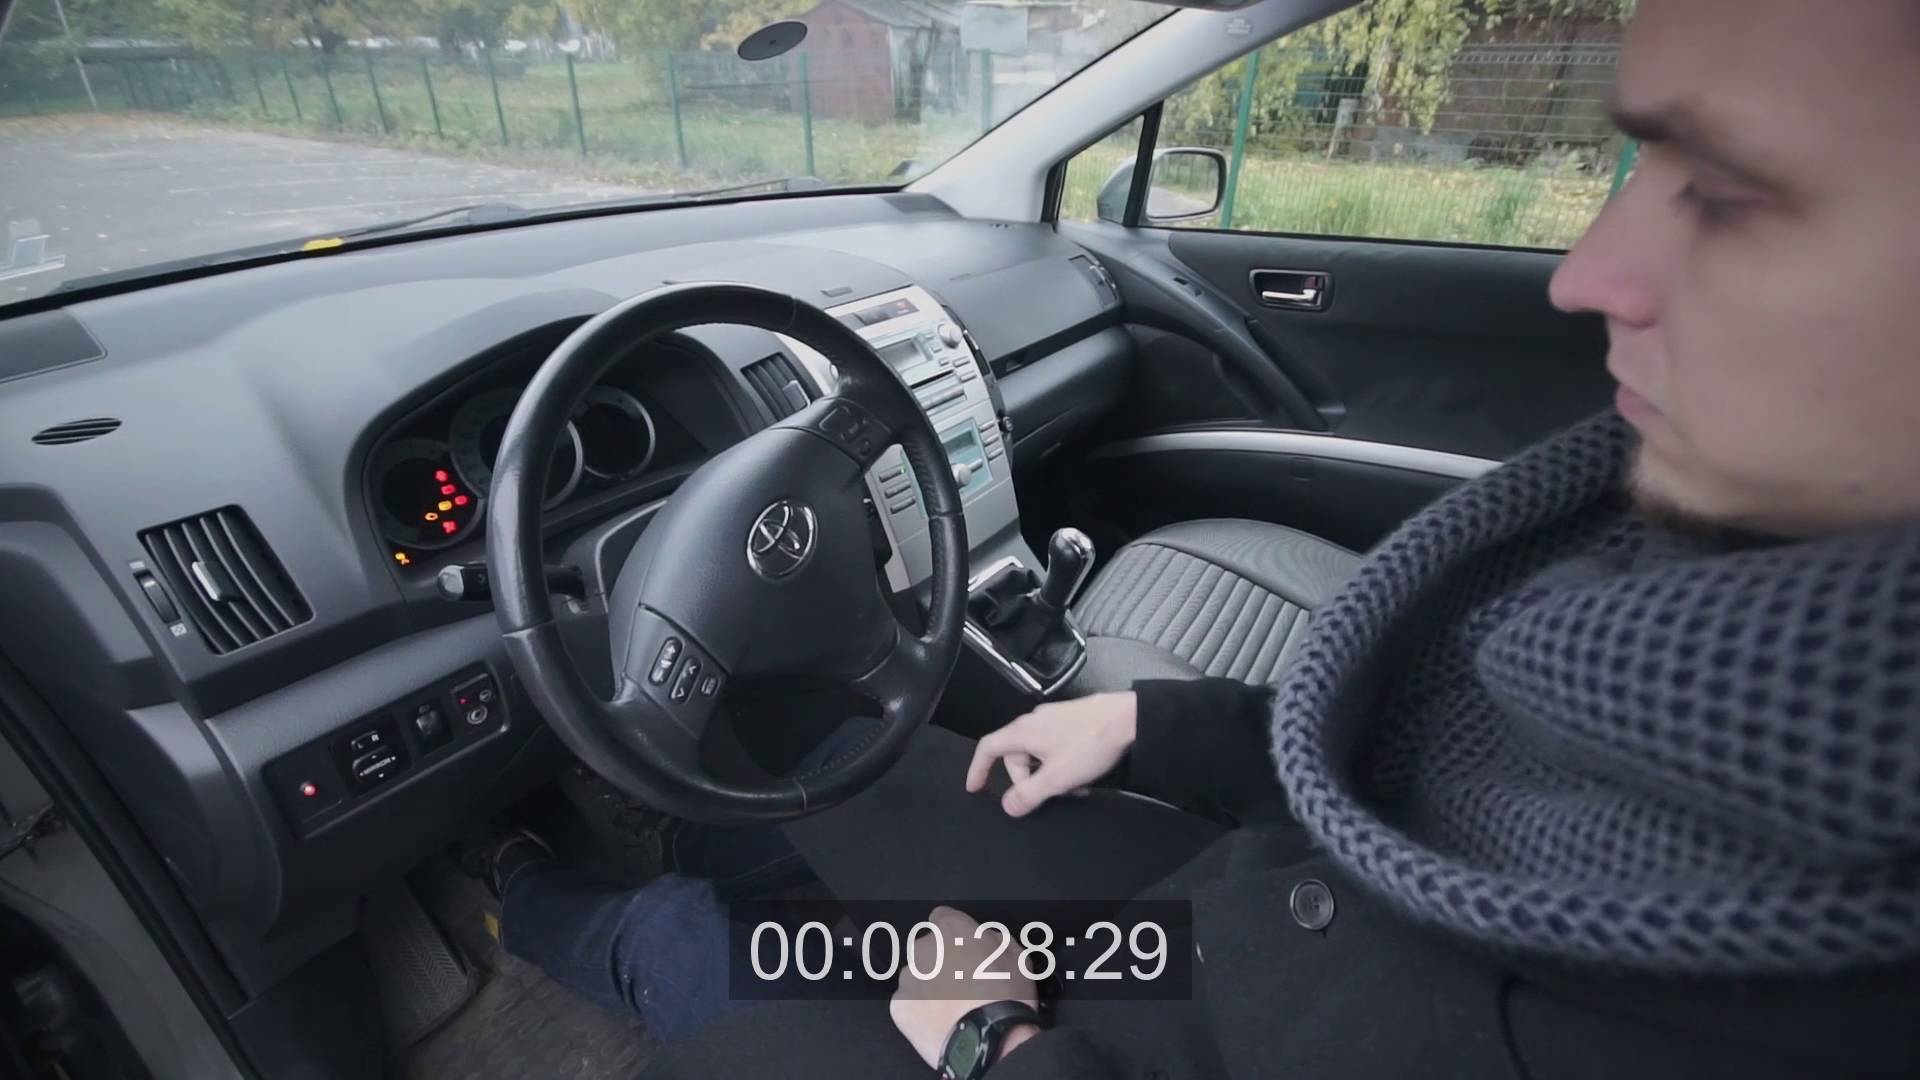 VIDEO: Valsts policijas eksperiments: Cik viegli ir nozagt auto ar zagļu rīcībā esošajām tehnoloģijām?